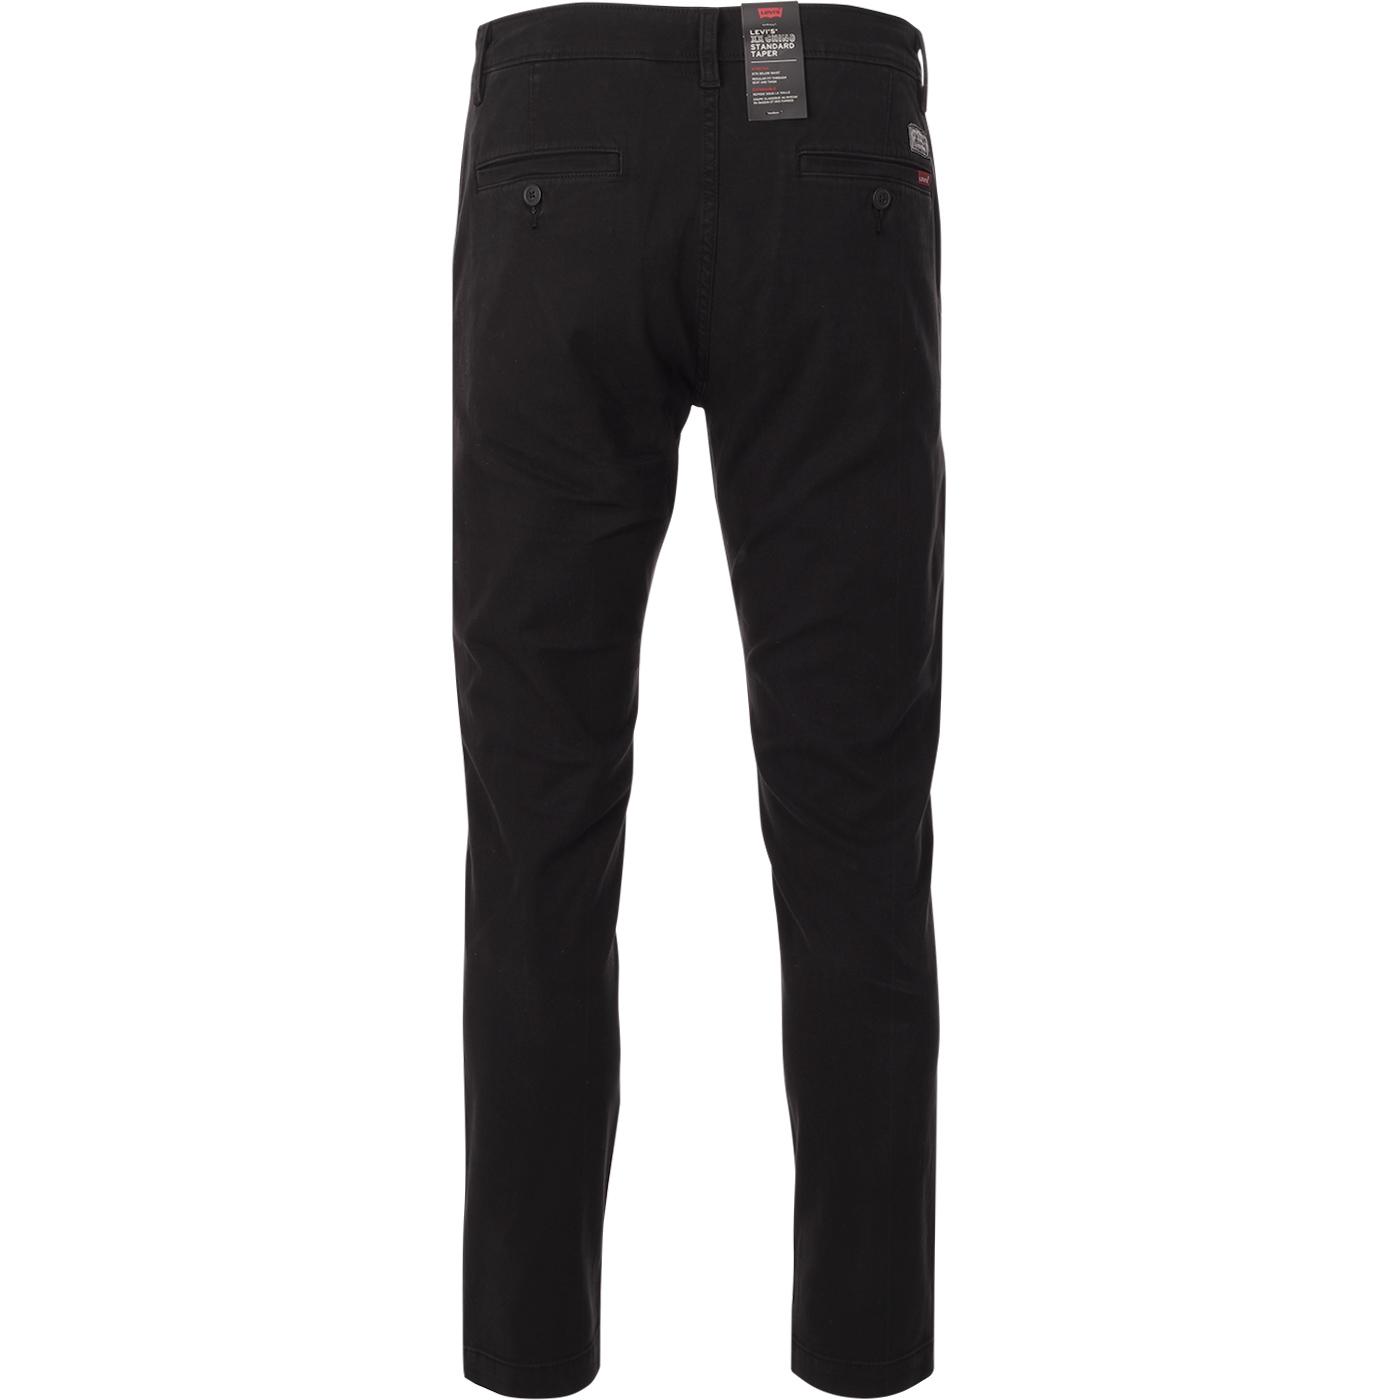 LEVI'S Retro Mod Standard Taper XX Chino Trousers in Black